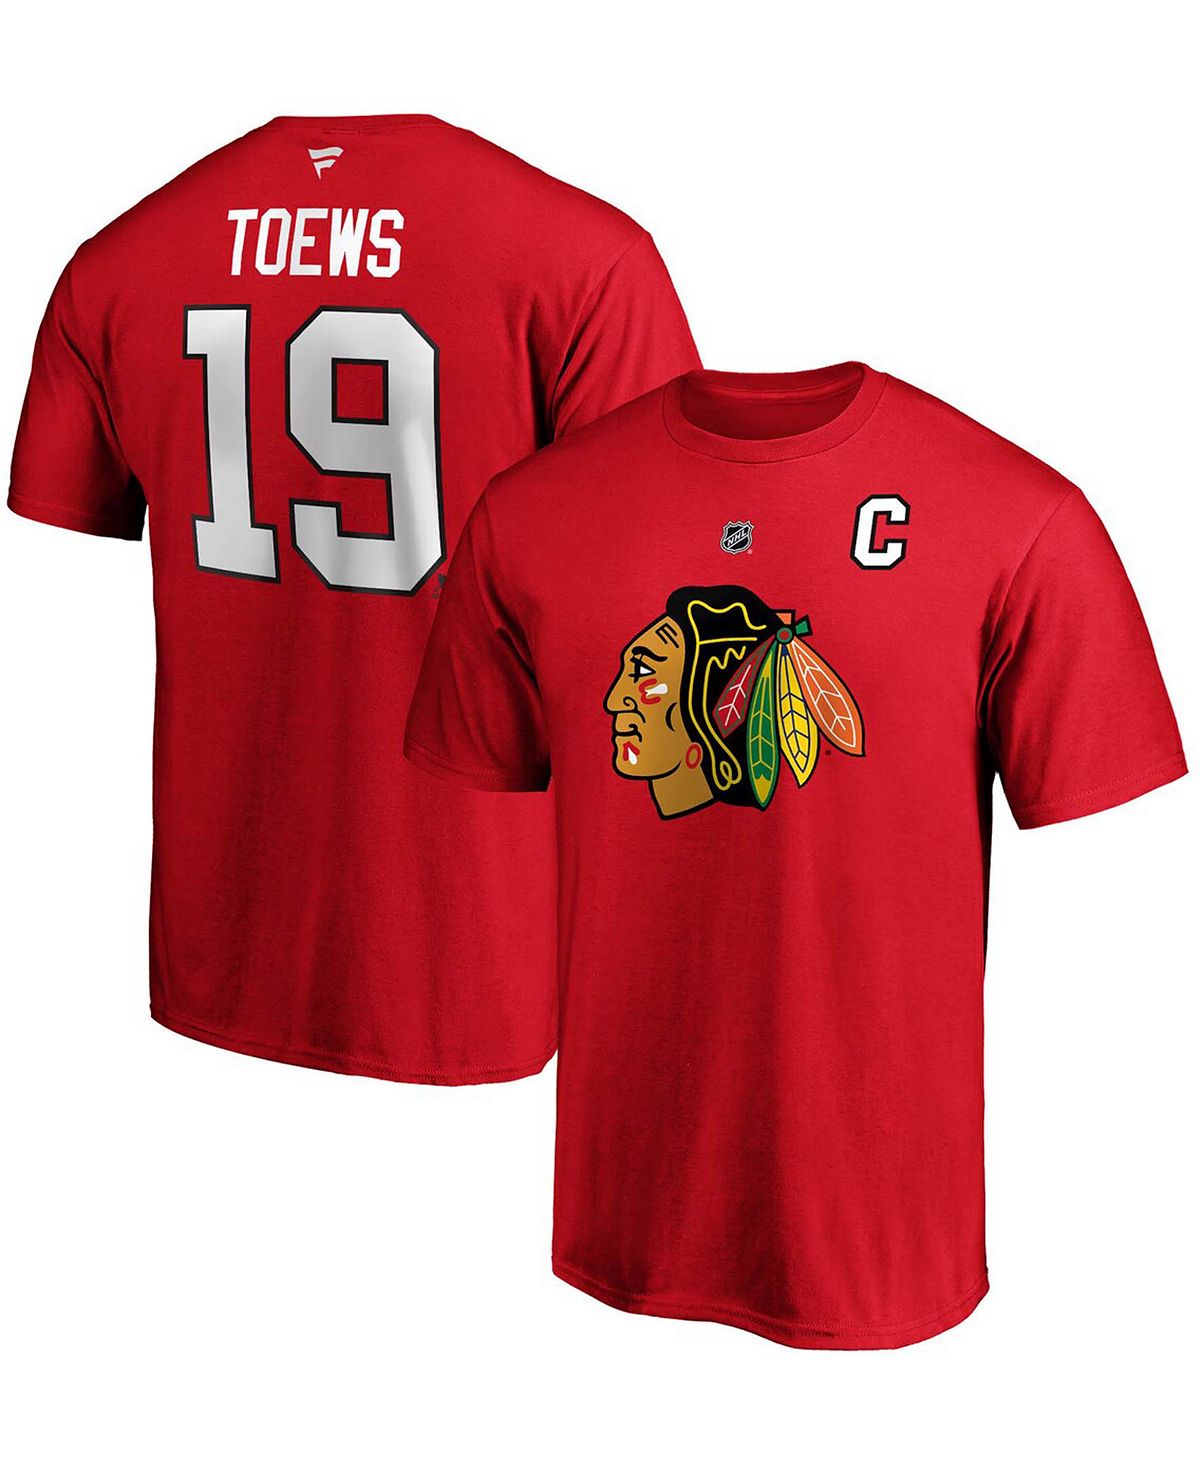 цена Мужская футболка jonathan toews red chicago blackhawks team с аутентичным названием и номером стека Fanatics, красный